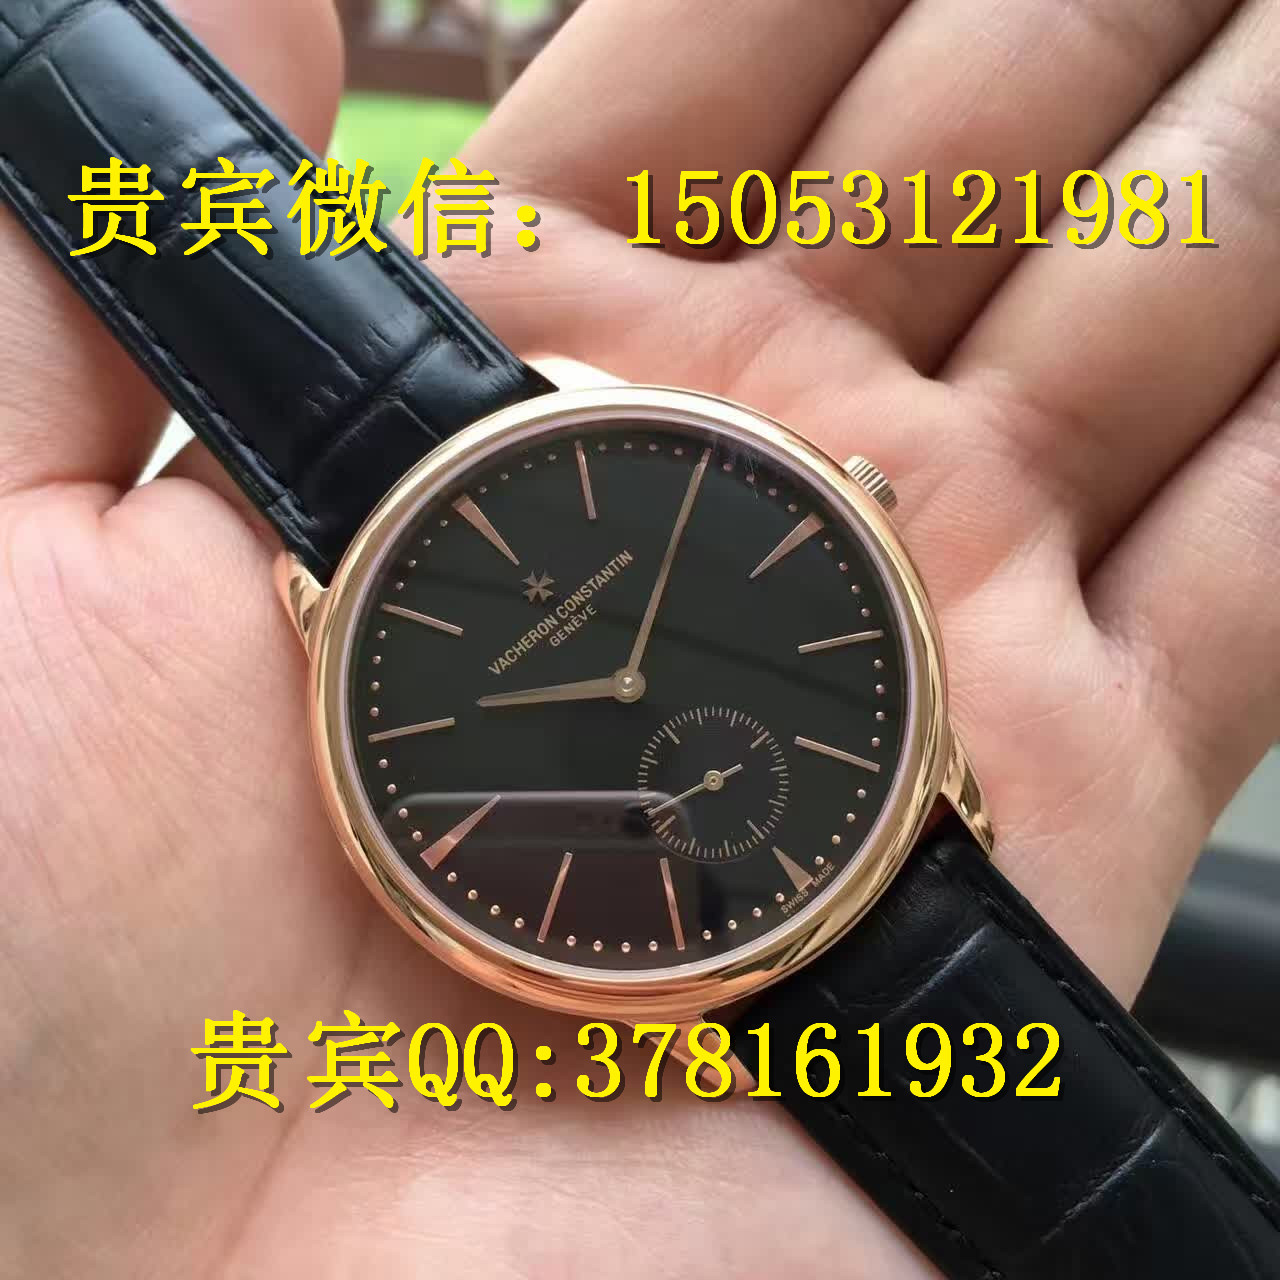 大连江诗丹顿机械手表价格及图片大连哪里有卖江诗丹顿手表大连瑞士表图片